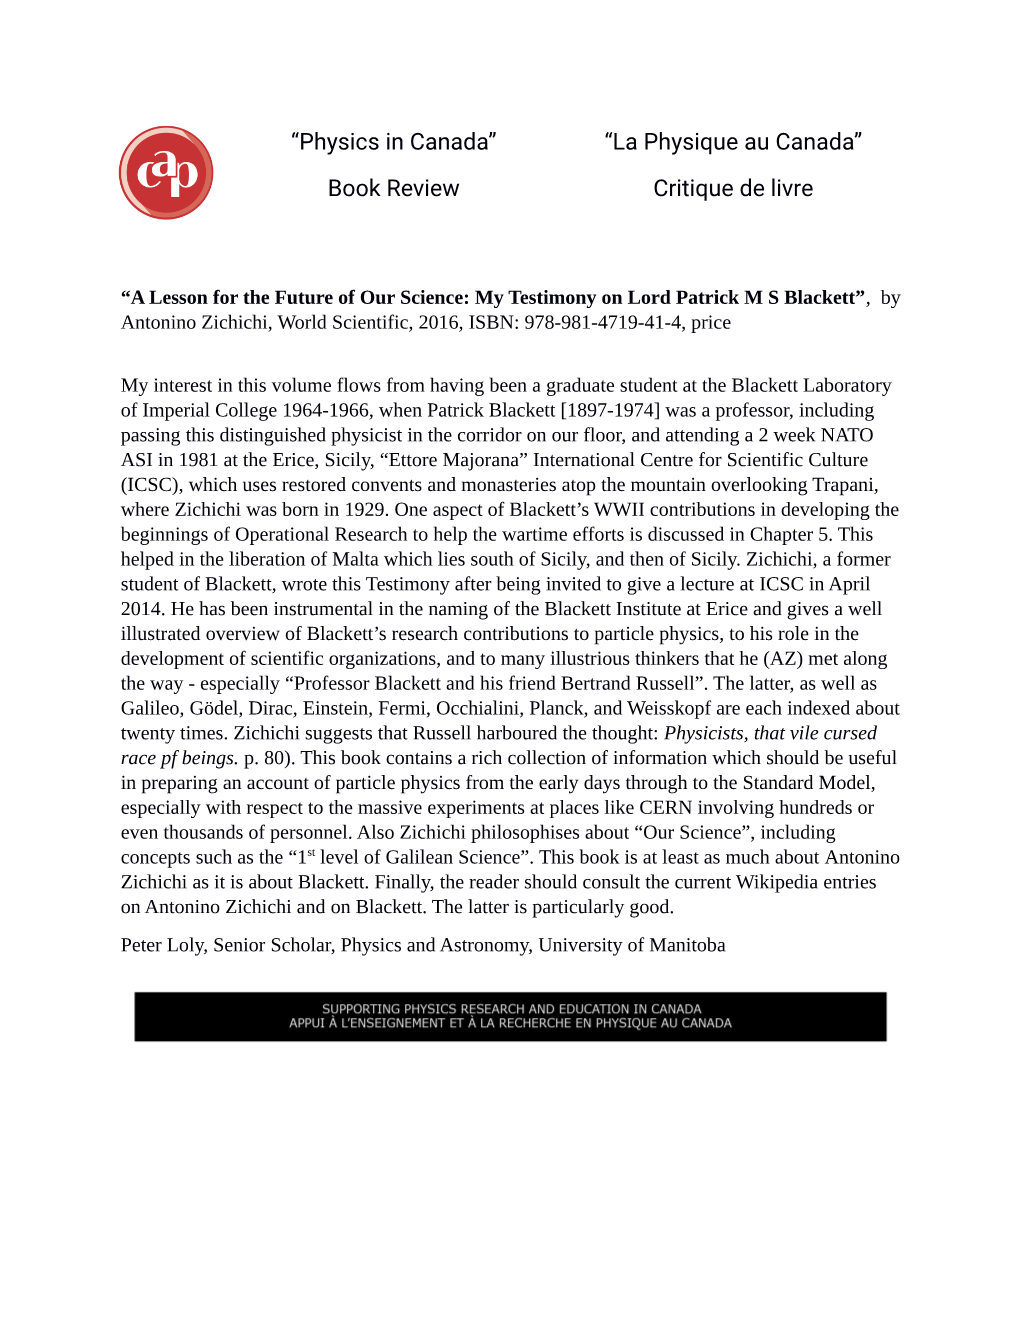 Book Review “La Physique Au Canada” Critique De Livre